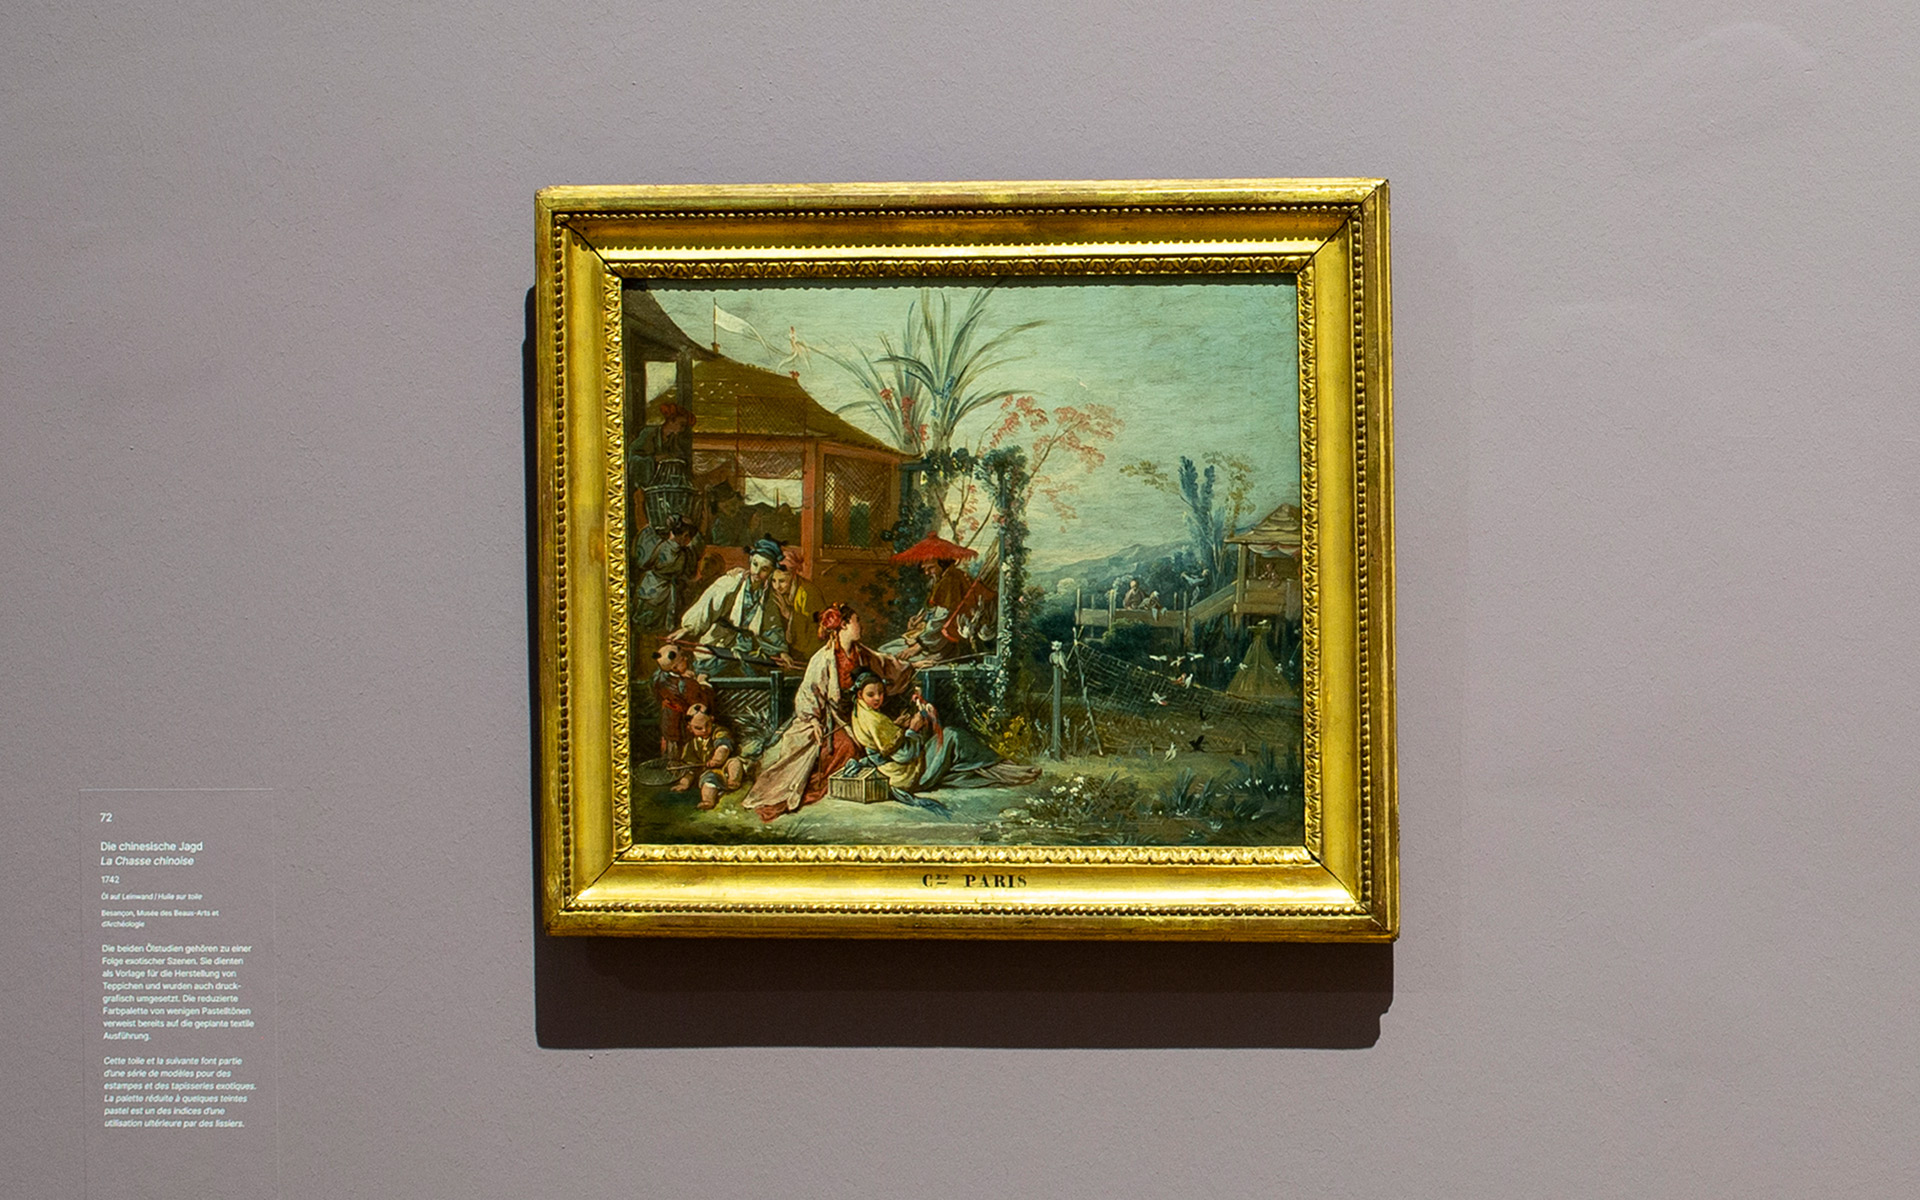 Ausstellungsansicht des Gemäldes Die chinesische Jagd von 1742 des Künstlers François Boucher. Das Gemälde hat einen Goldrahmen. Links daneben befindet sich ein Text zu dem Bild auf der Wand.